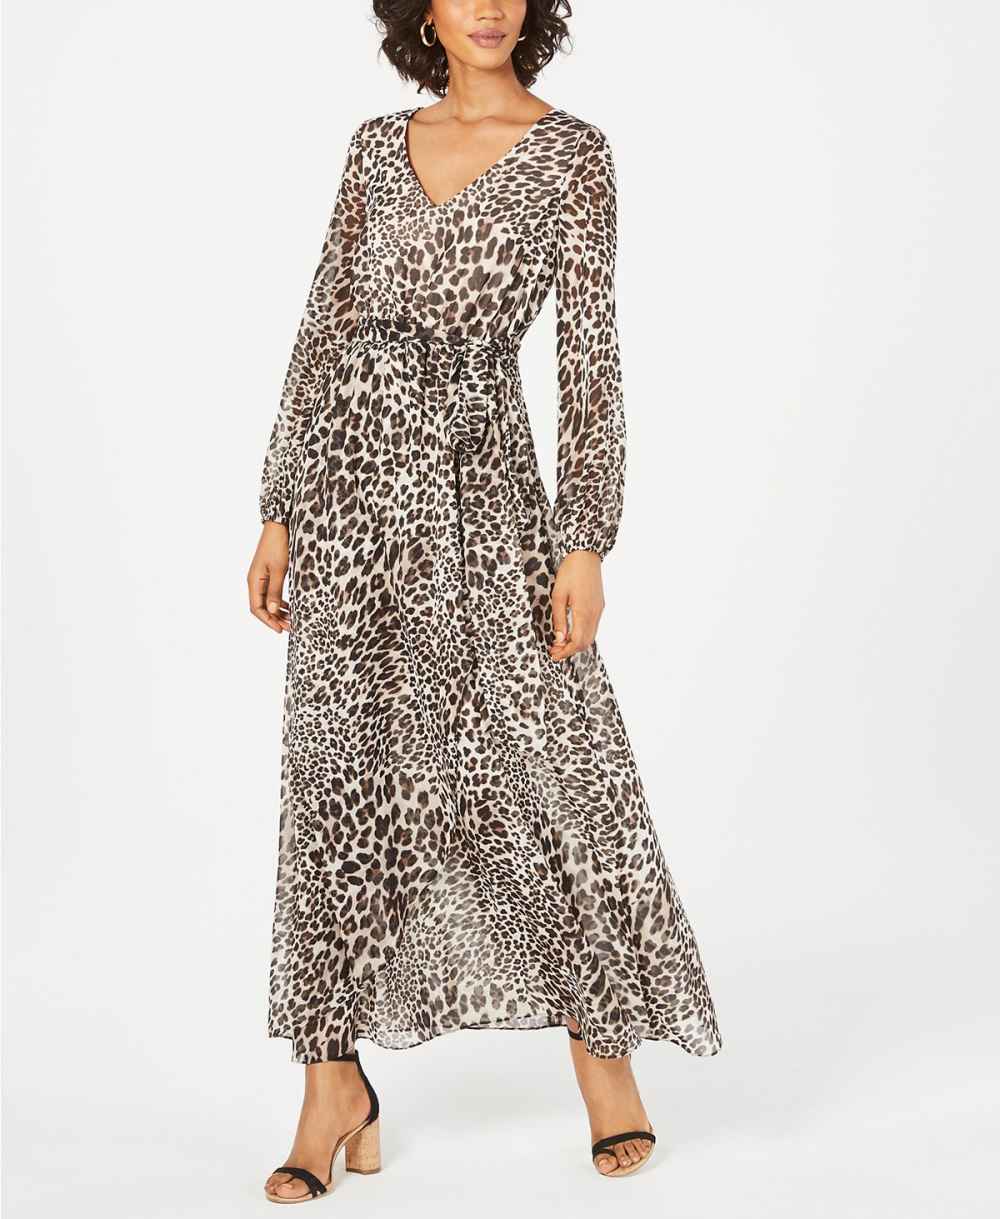 inc leopard dress front